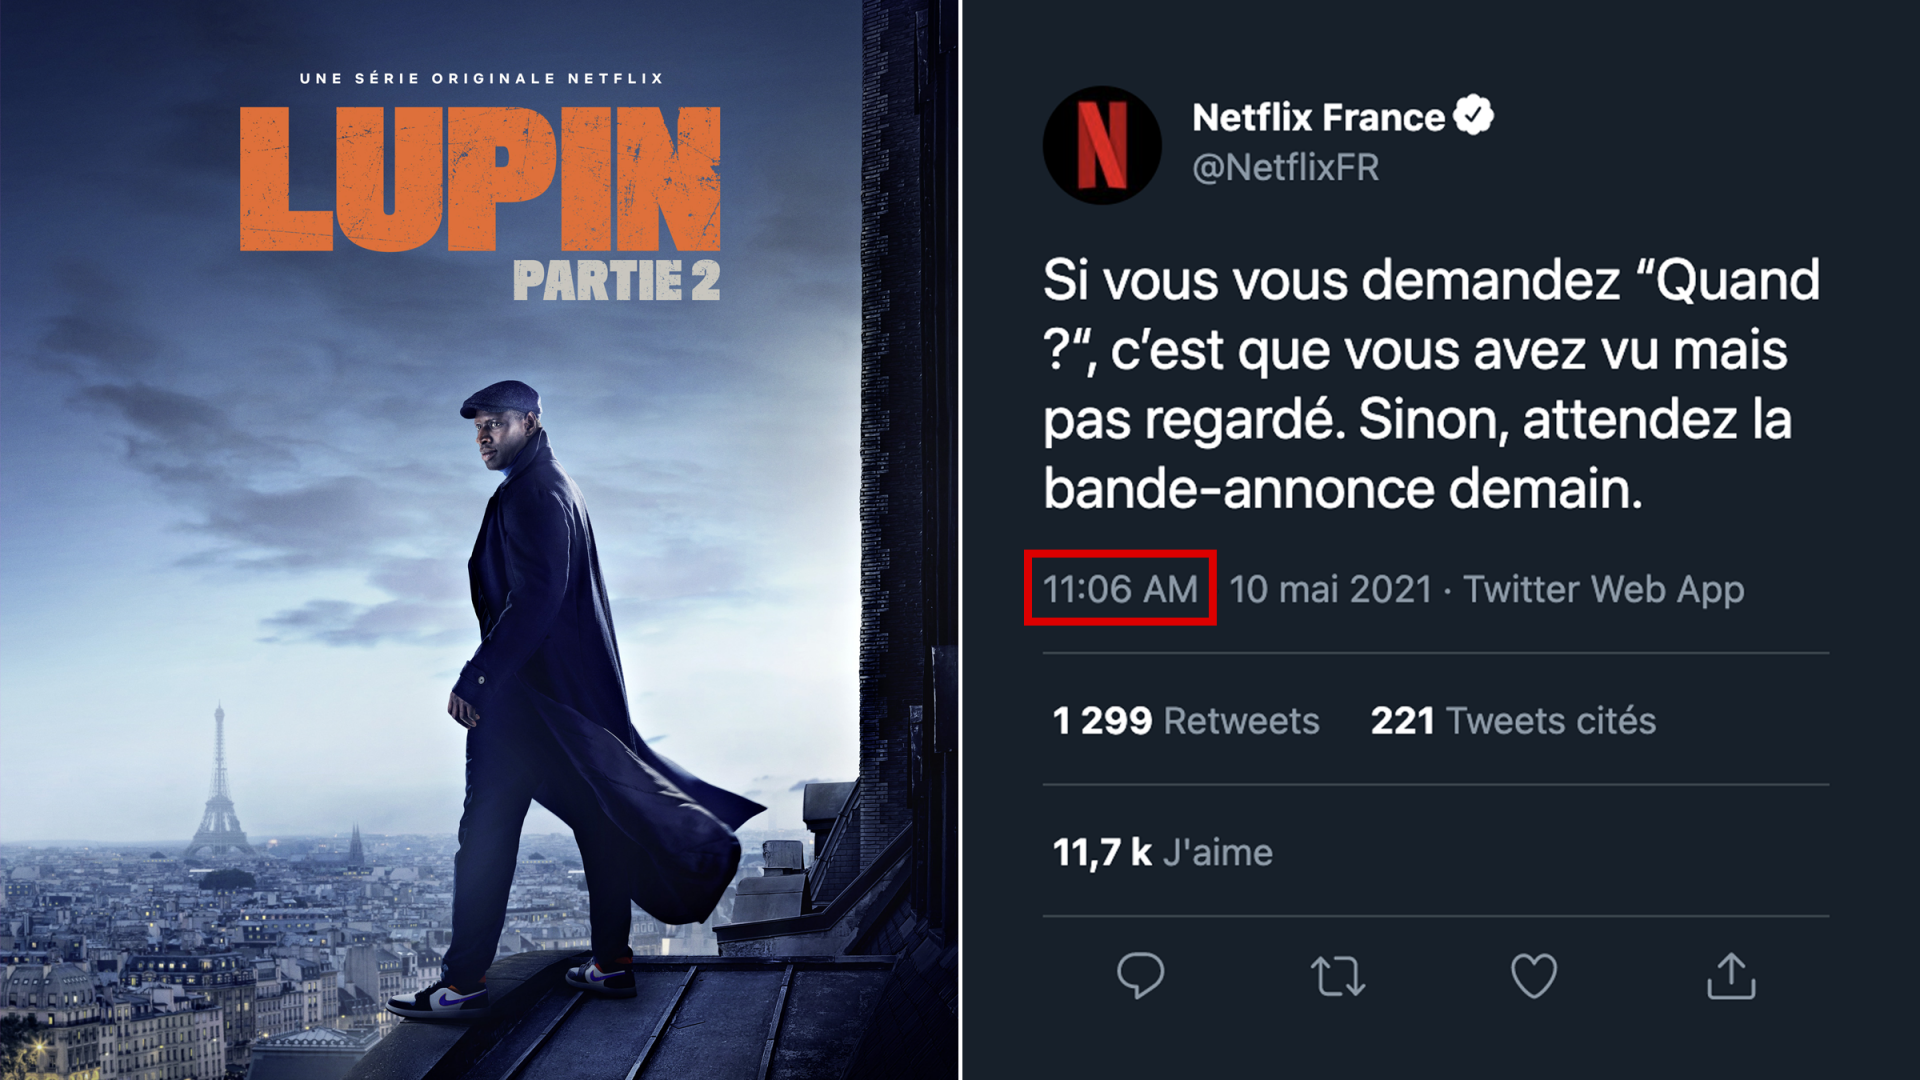 Netflix Annonce La Date De Sortie De La Partie 2 De Lupin Avec Subtilité Sur Twitter